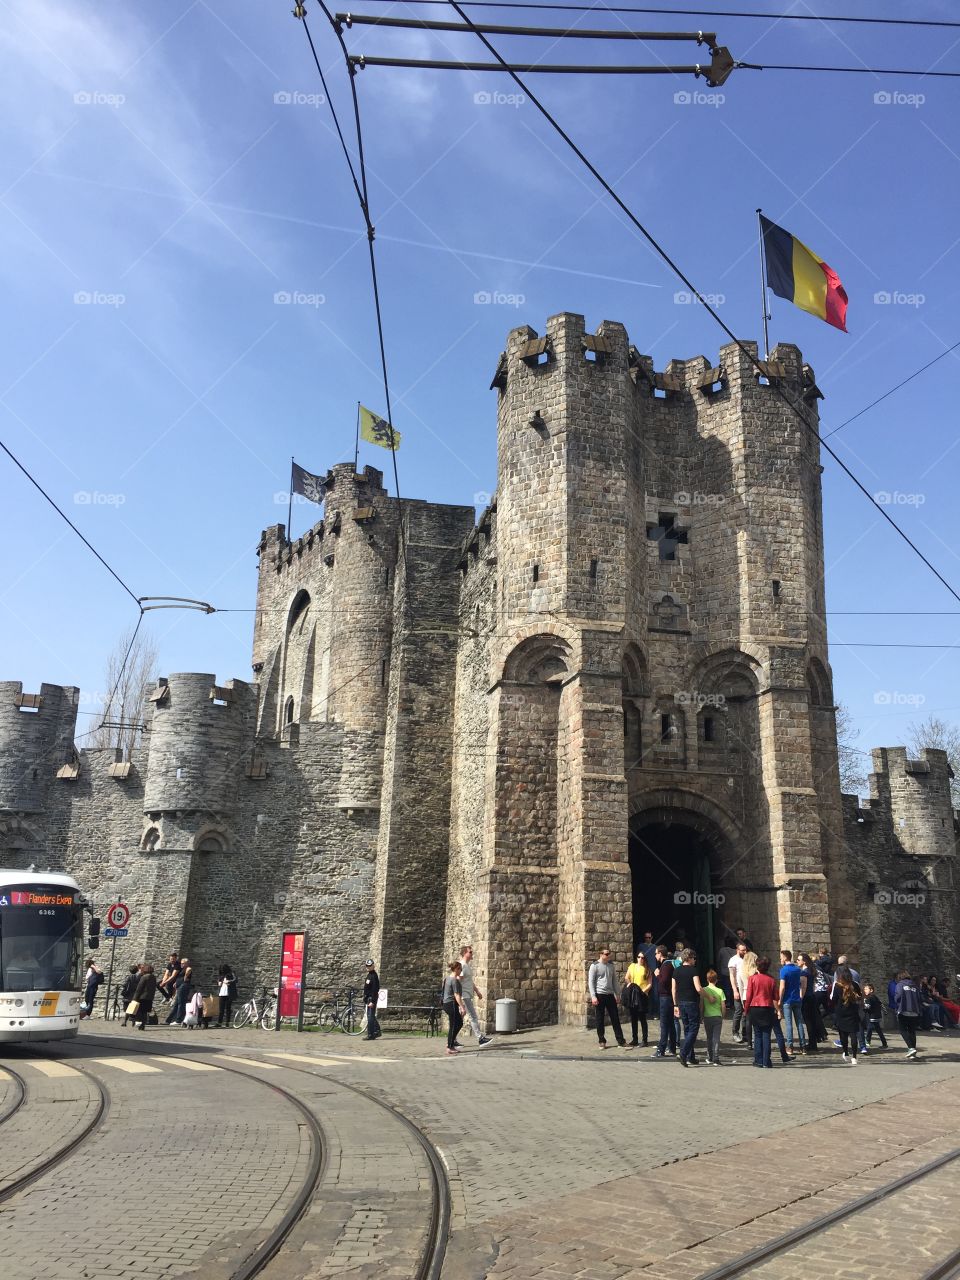 Castle in Belgium